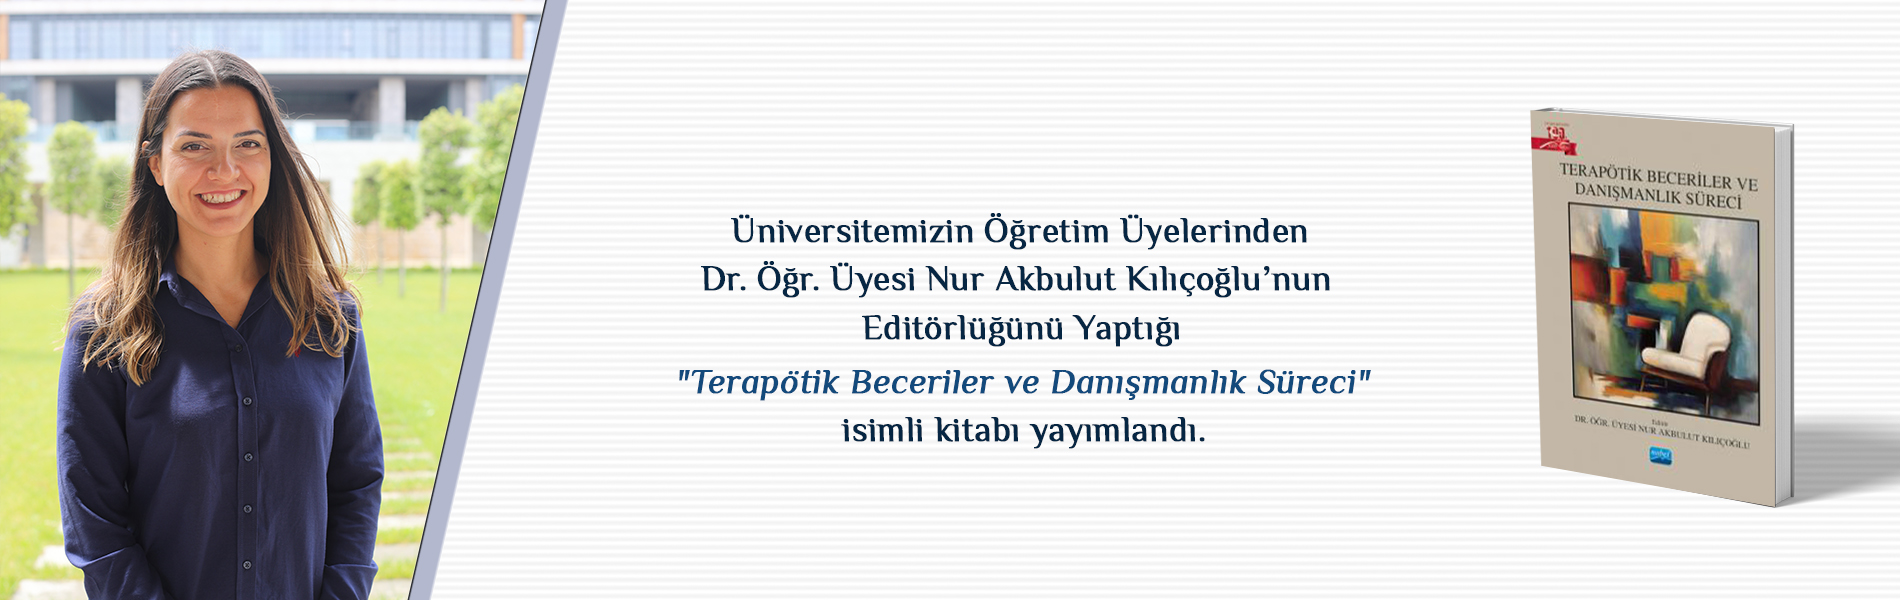 Dr. Öğr. Üyesi Nur Akbulut Kılıçoğlu’nun Editörlüğünü Yaptığı “Terapötik Beceriler ve Danışmanlık Süreci” İsimli Kitap Yayımlandı